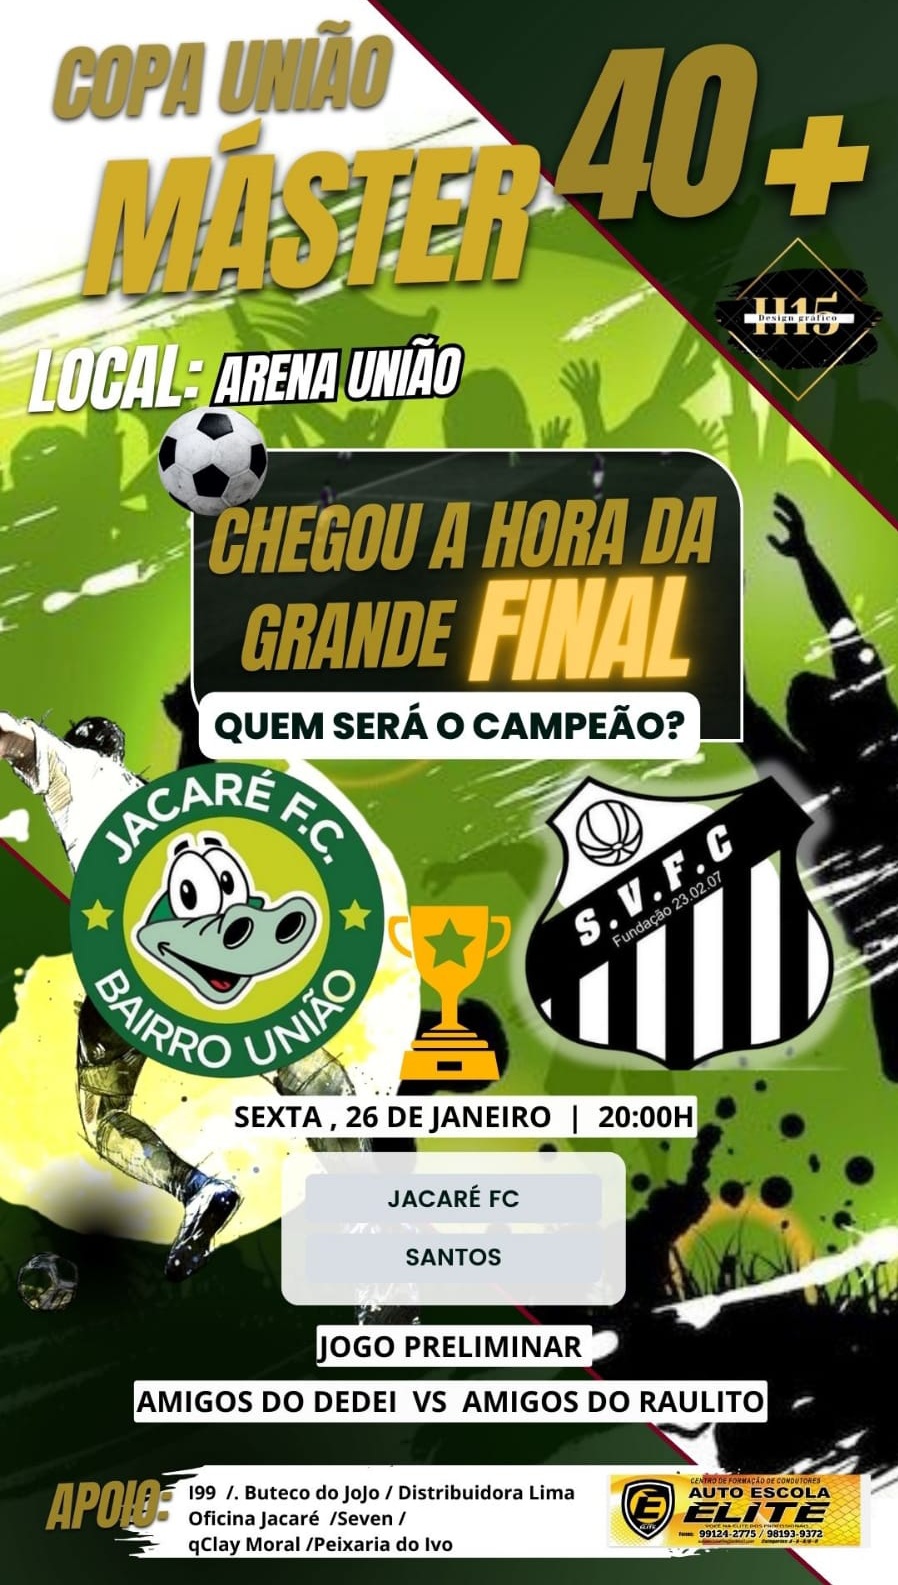 Santos da Vila Master e Jacaré FC fazem a final da Copa União Master nesta sexta-feira (26/01)